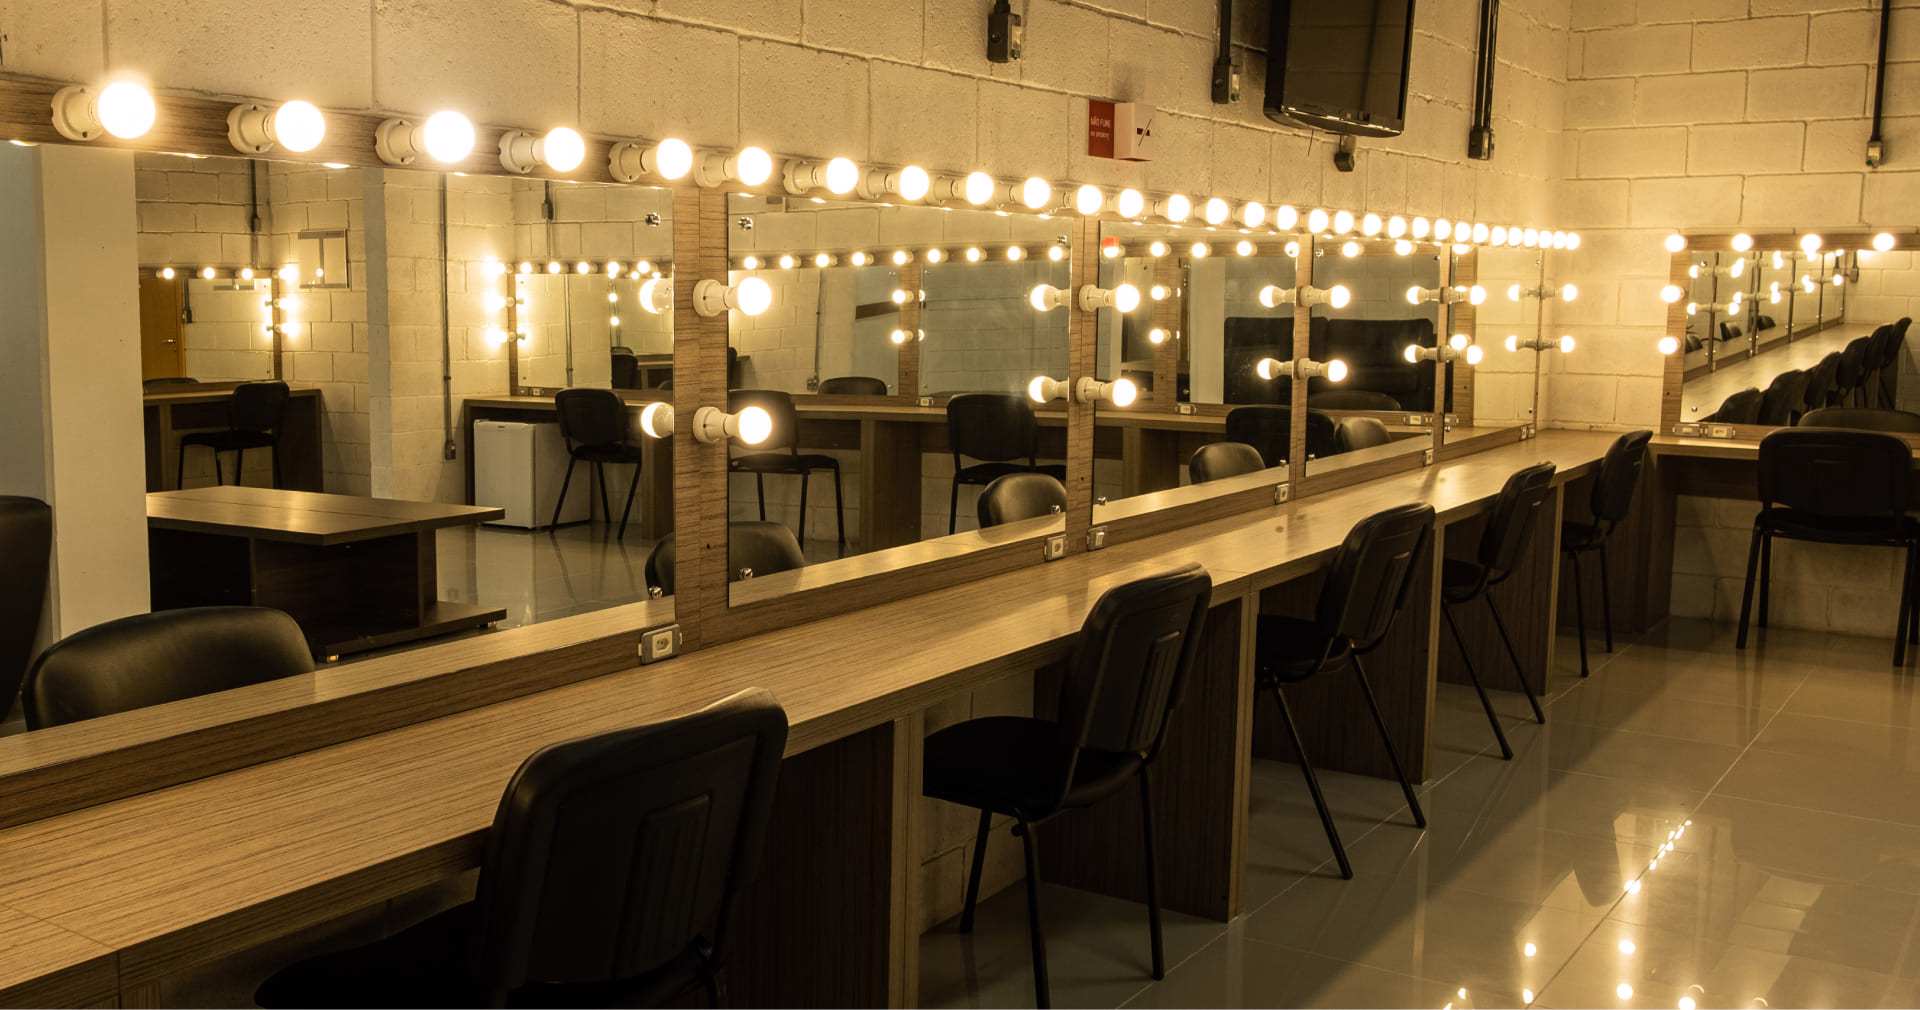 Camarim do Teatro, com uma bancada e cadeiras posicionadas em frente ao espelhos fixados na parede